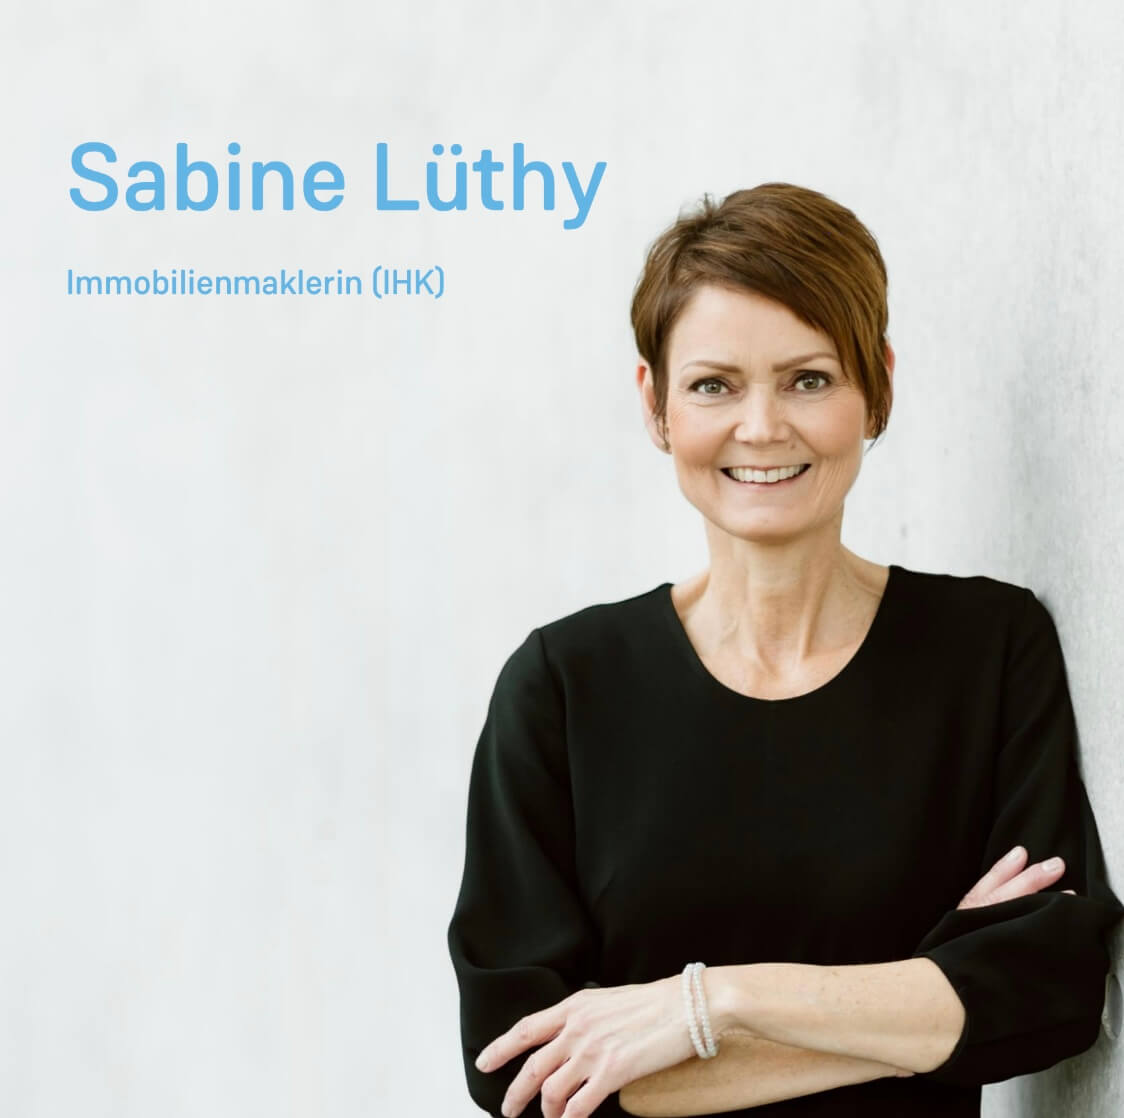 Sabine Luethy